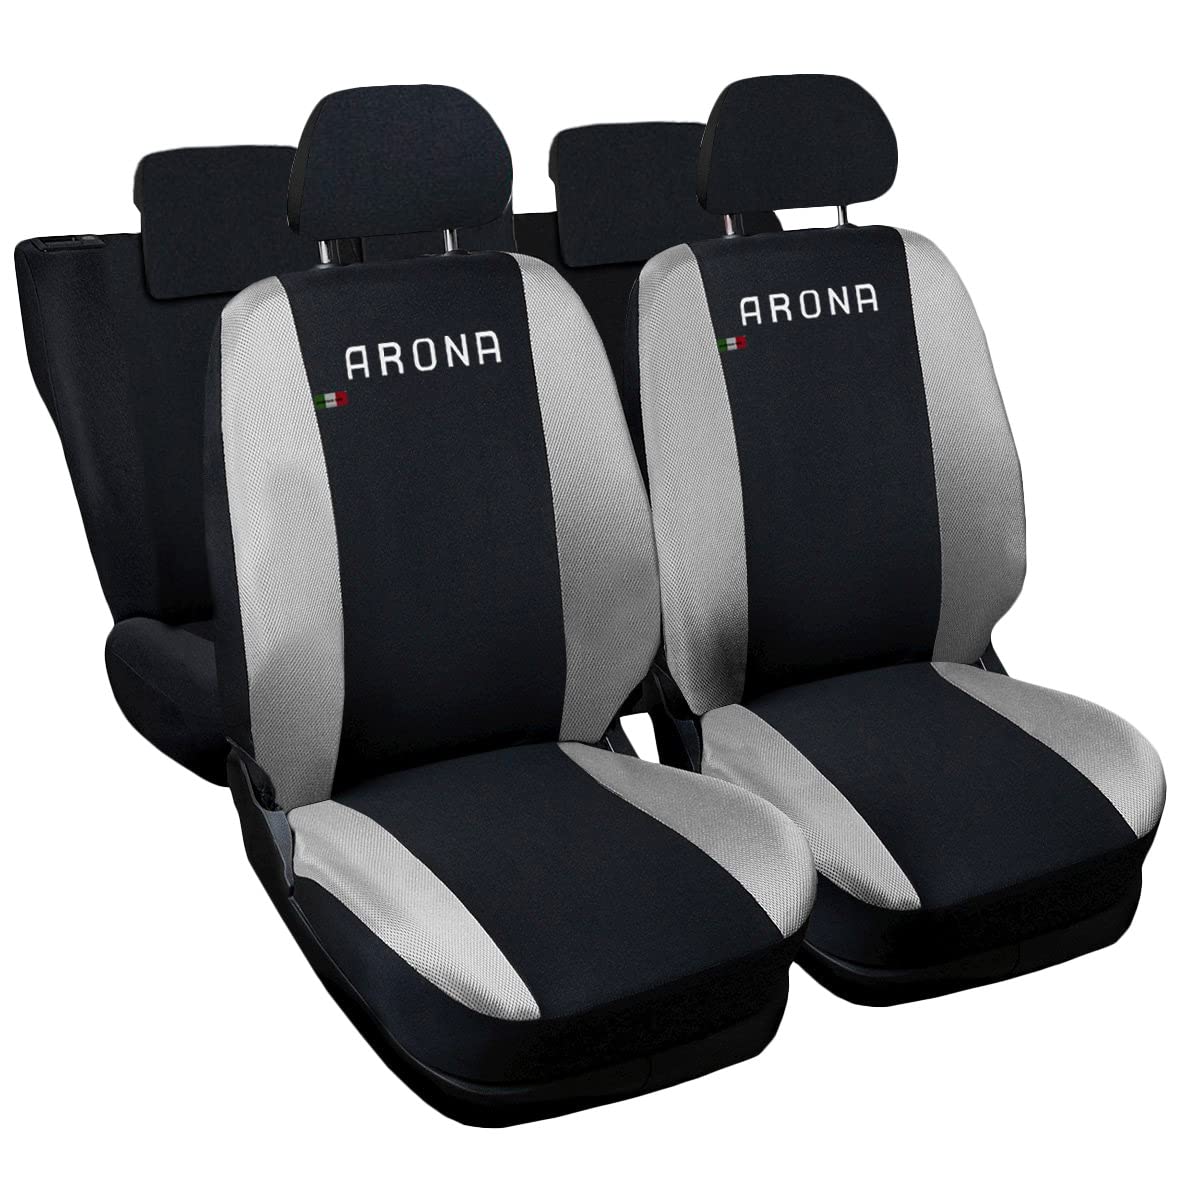 Lupex Shop Autositzbezüge kompatibel mit Arona, Made in Italy, Polyestergewebe, kompletter Satz Vorder- und Rücksitze (Schwarz - Hellgrau) von Lupex Shop